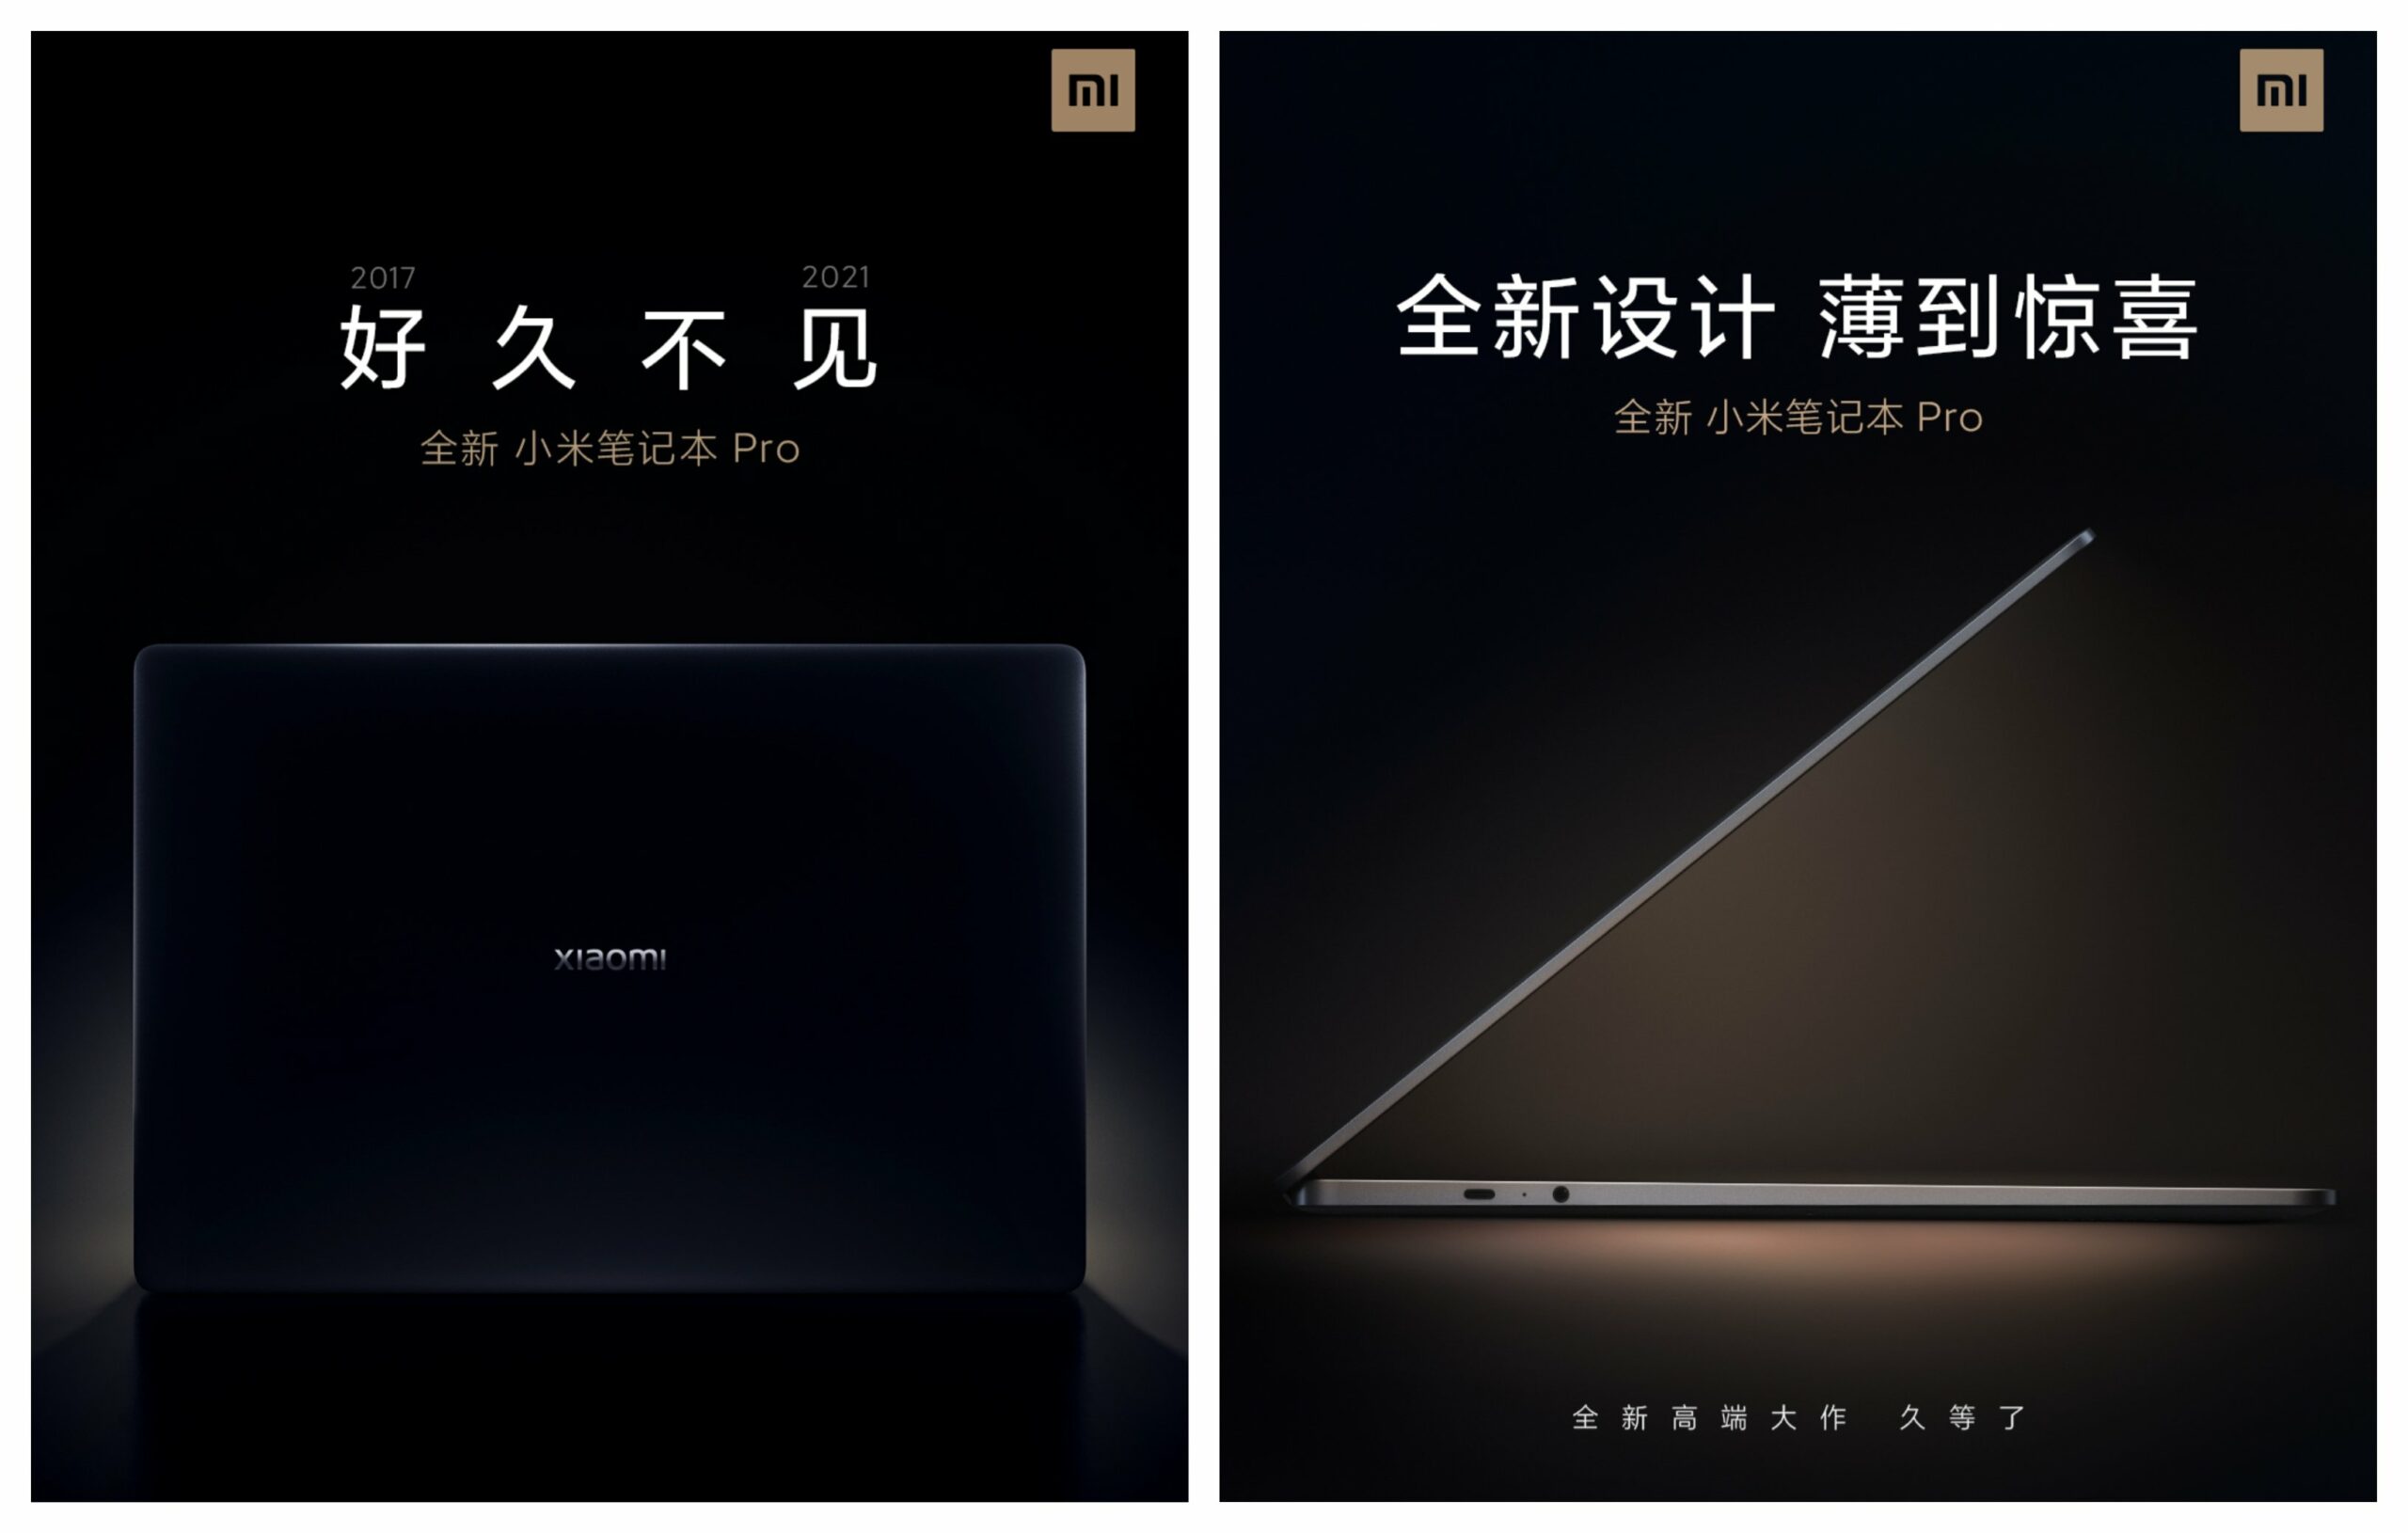 Xiaomi Mi Notebook Pro 2021 Kaitohu Whakaaturanga 01